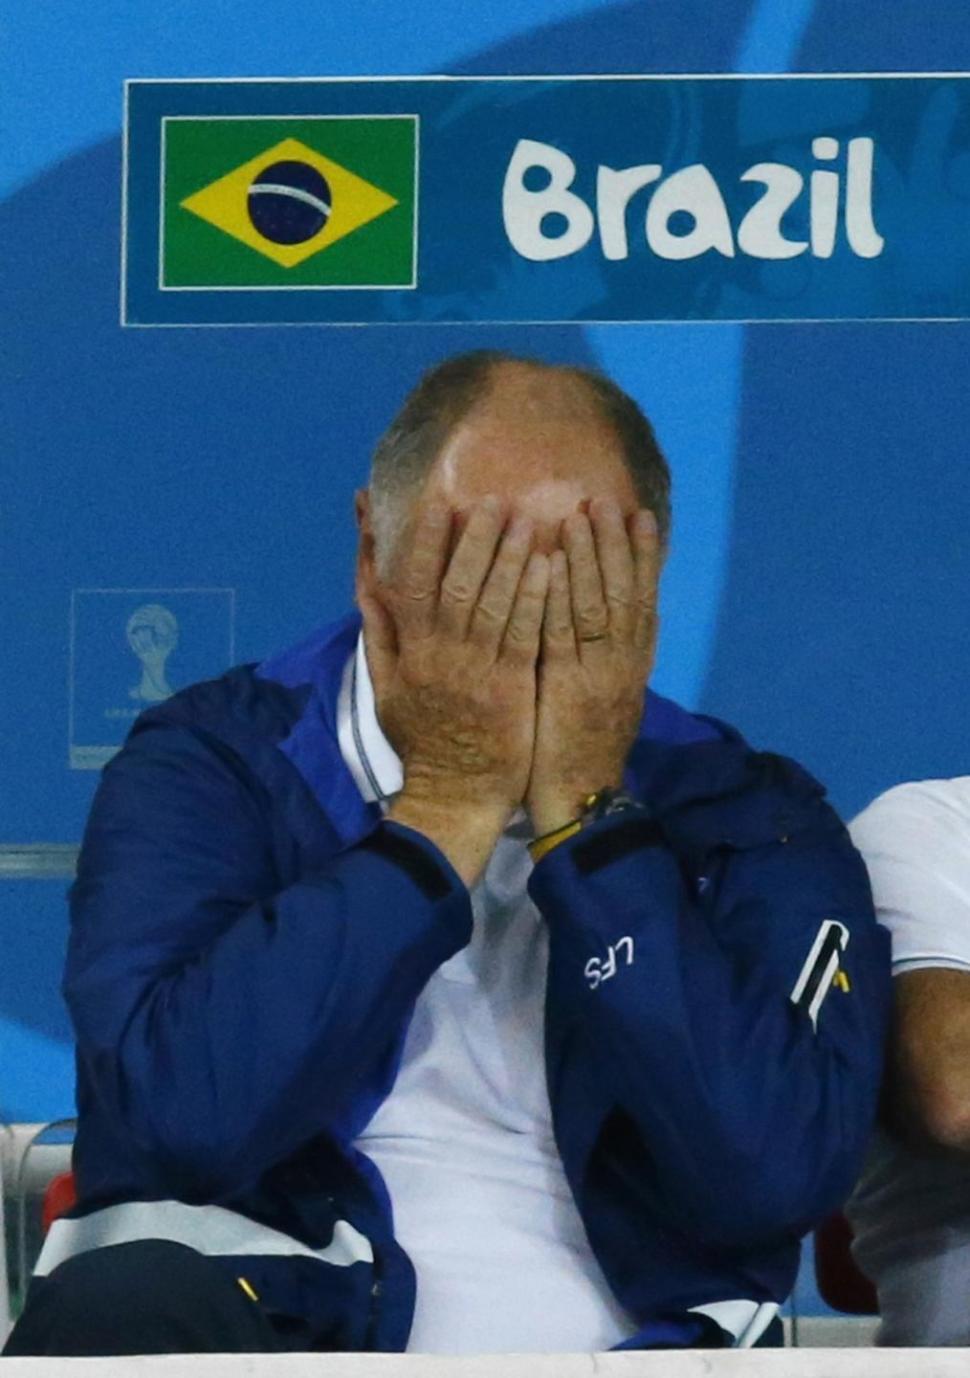 Plano Brasil/Copa do Mundo 2014:  “Tendão de Aquiles da Seleção Brasileira: Emocional”